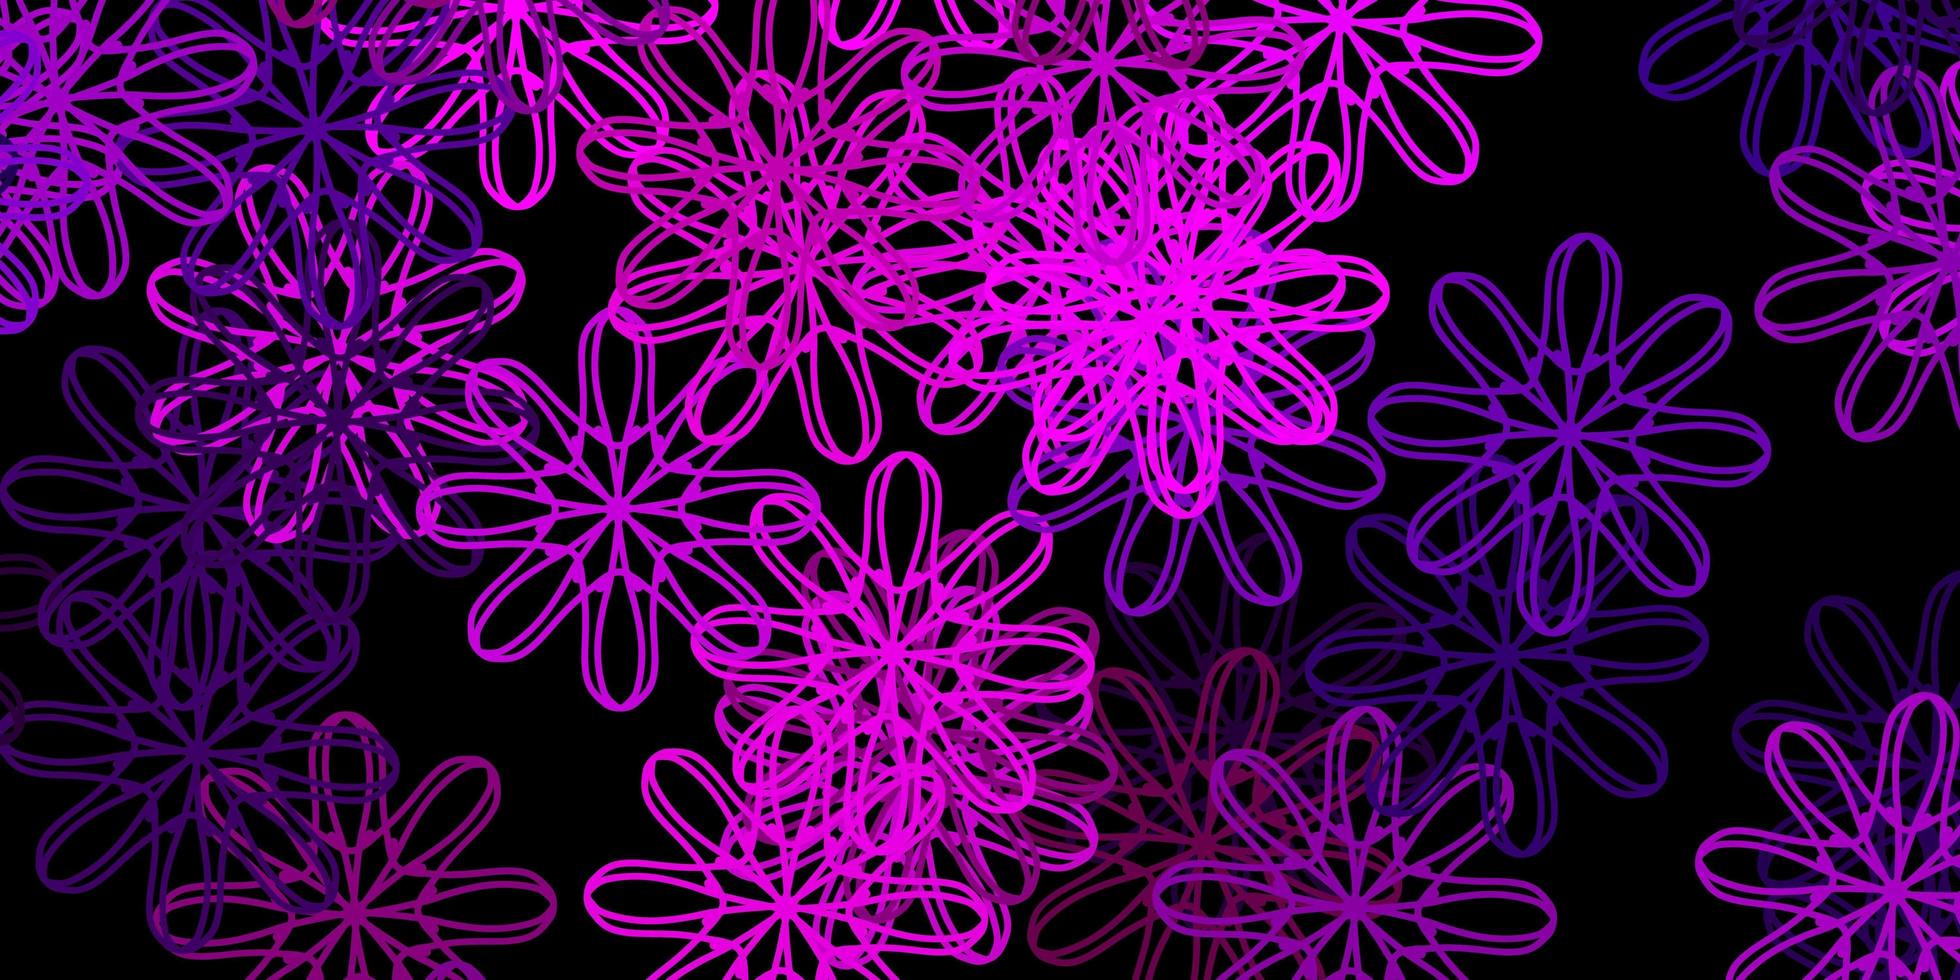 modèle vectoriel violet foncé avec des formes abstraites.